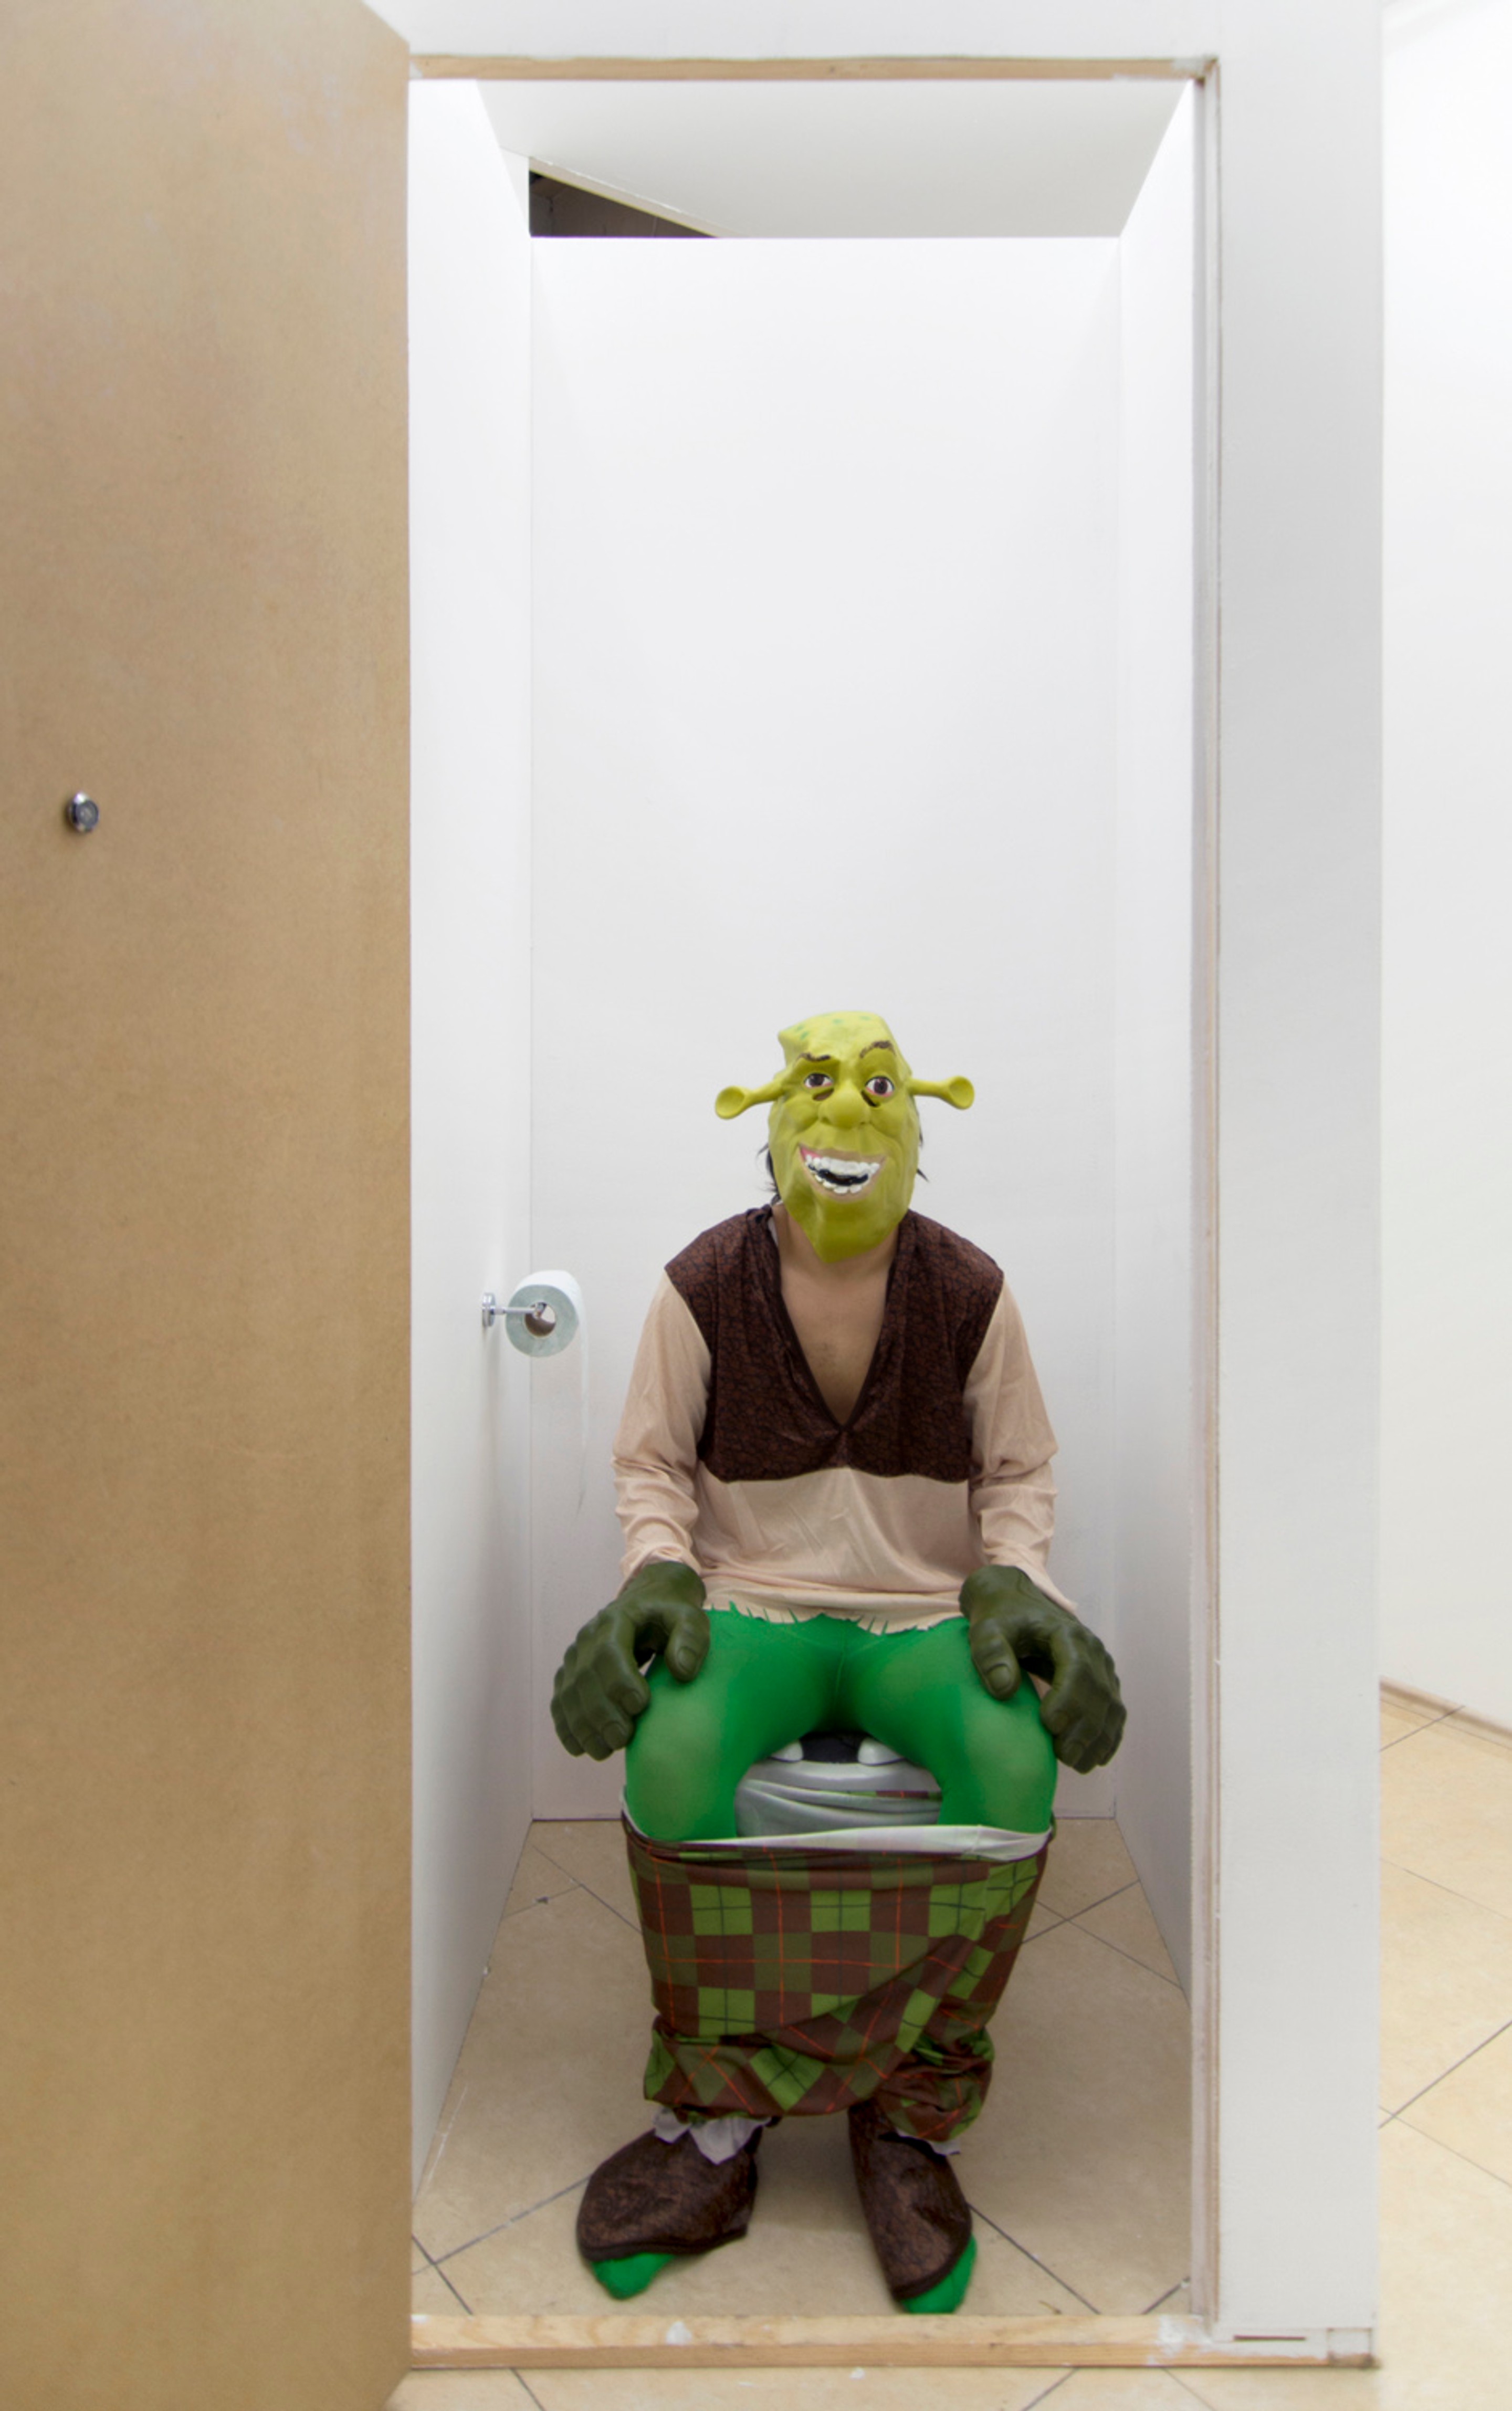 Ogro (Ogre), 2016
Shrek Costume, toilet paper holder, toilet paper, reversed
Unique